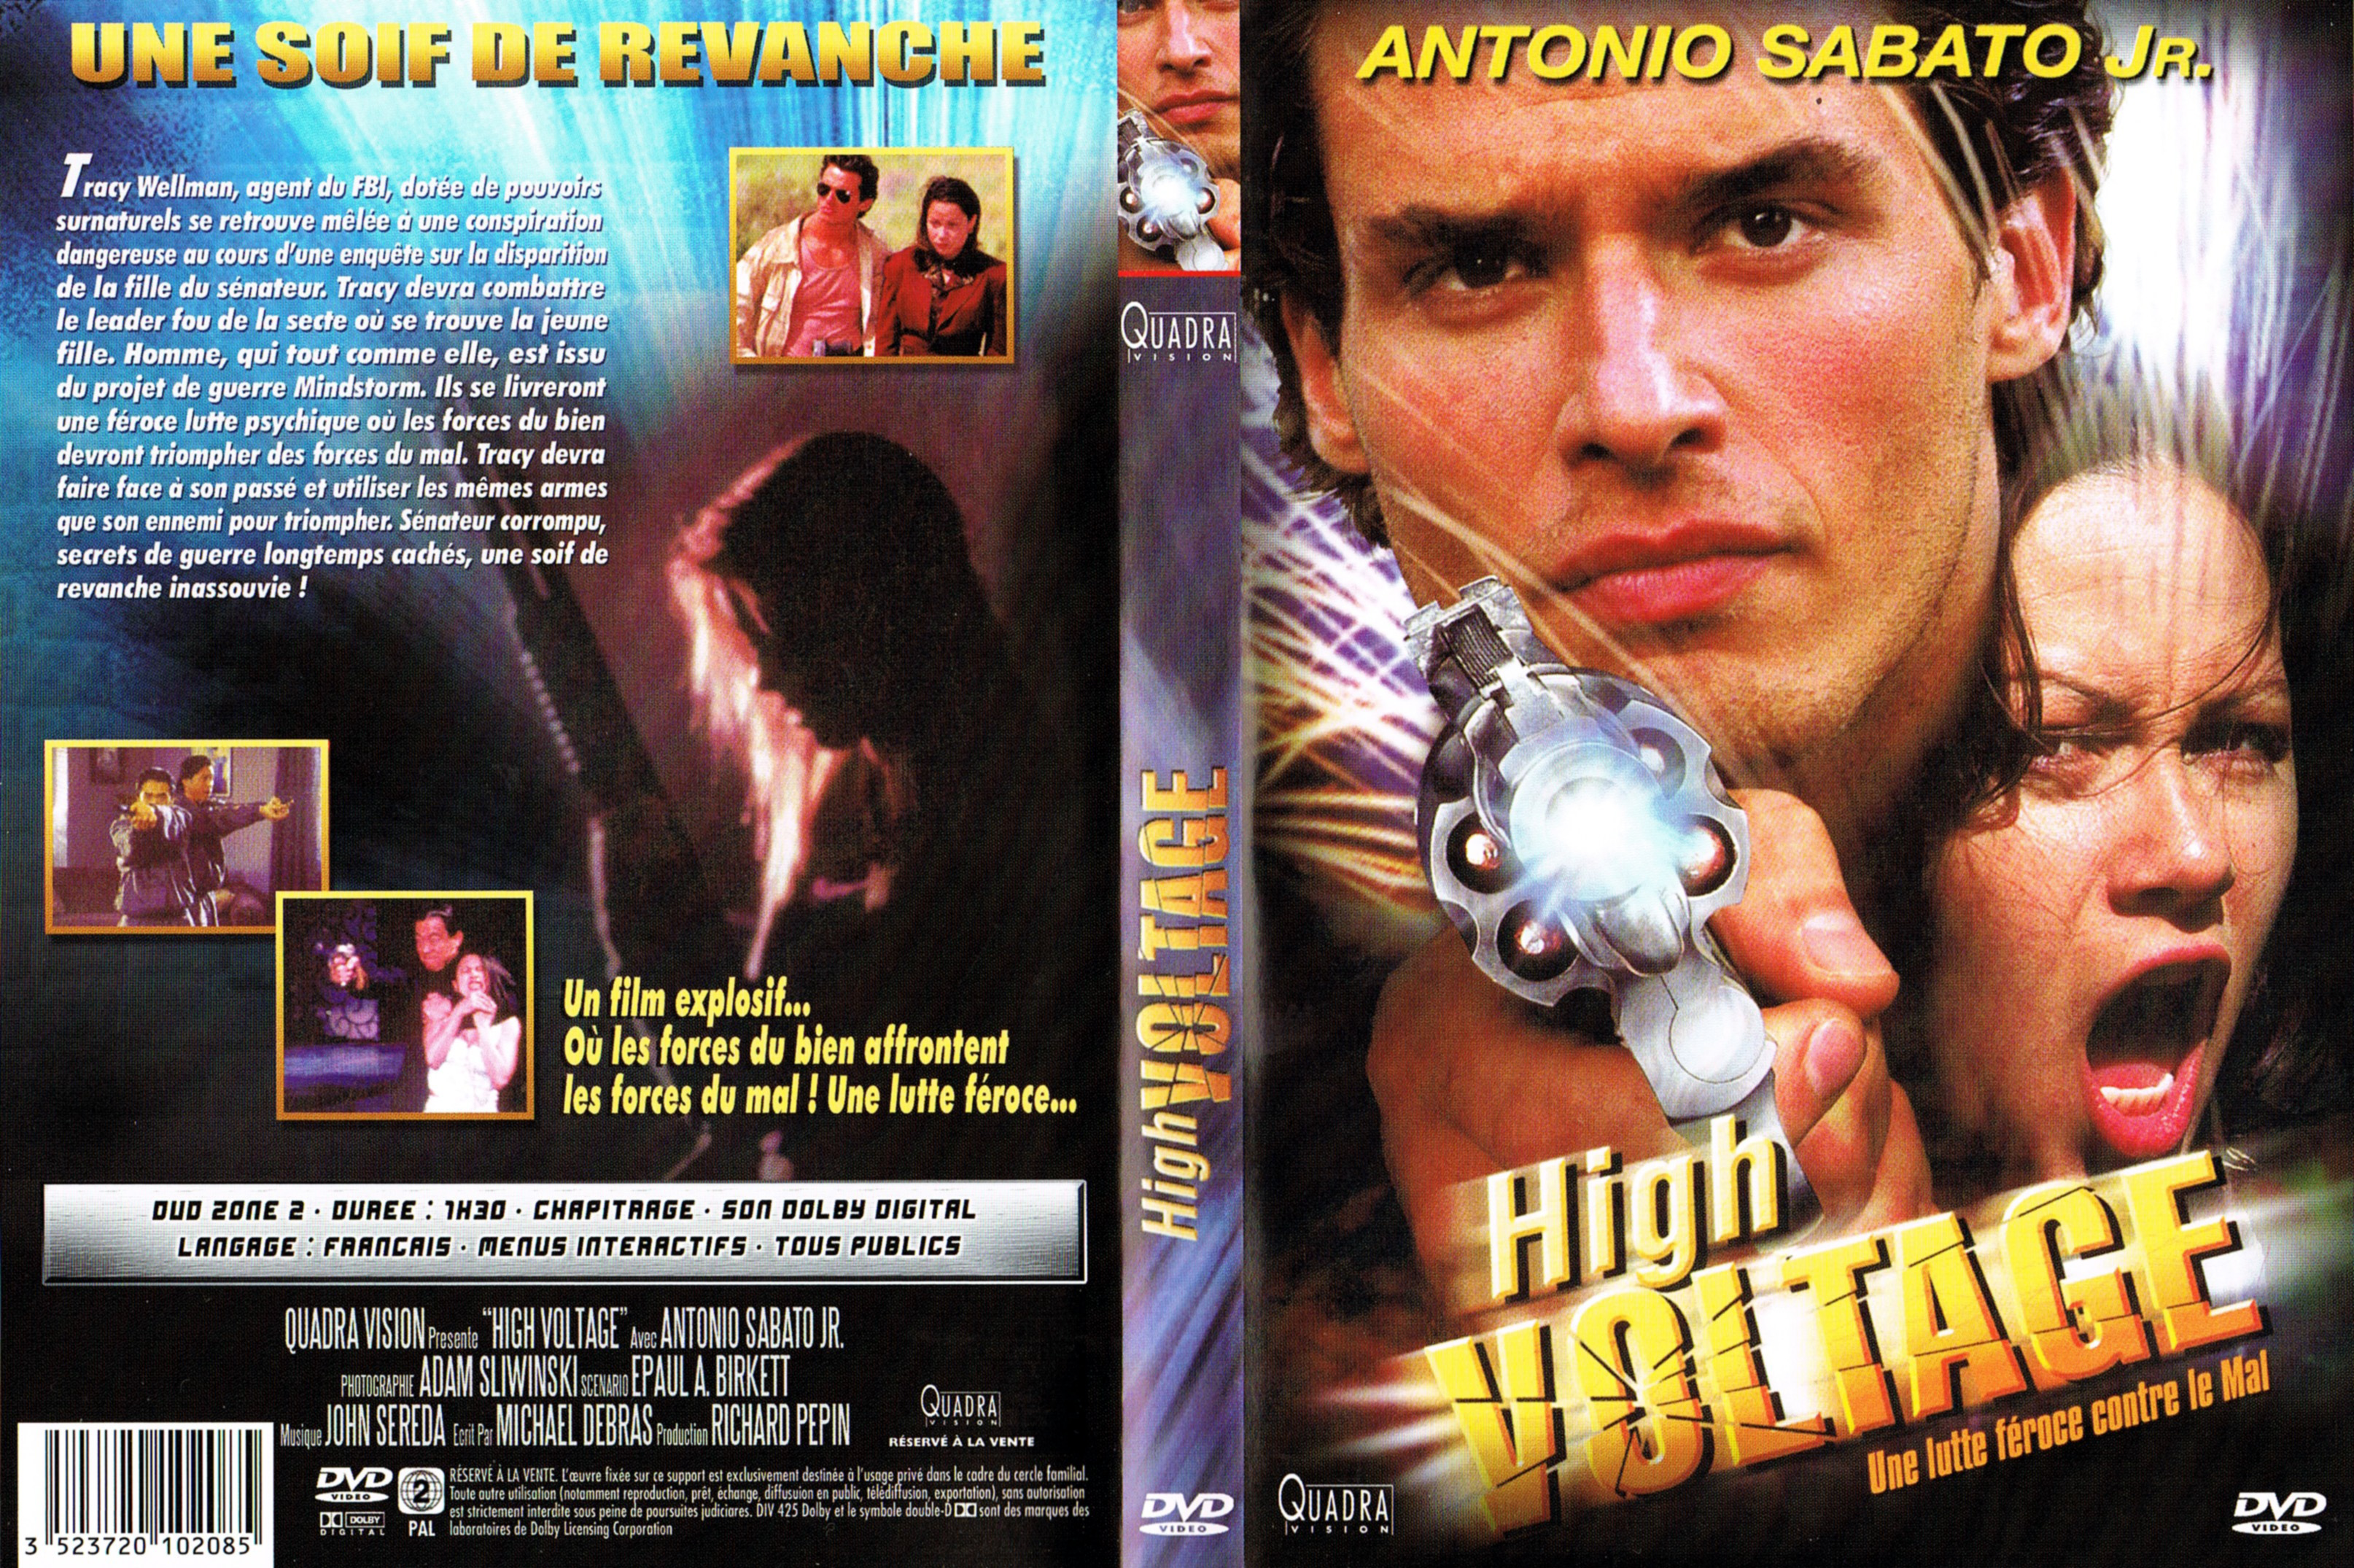 Jaquette DVD High voltage (Antonio Sabato Jr)